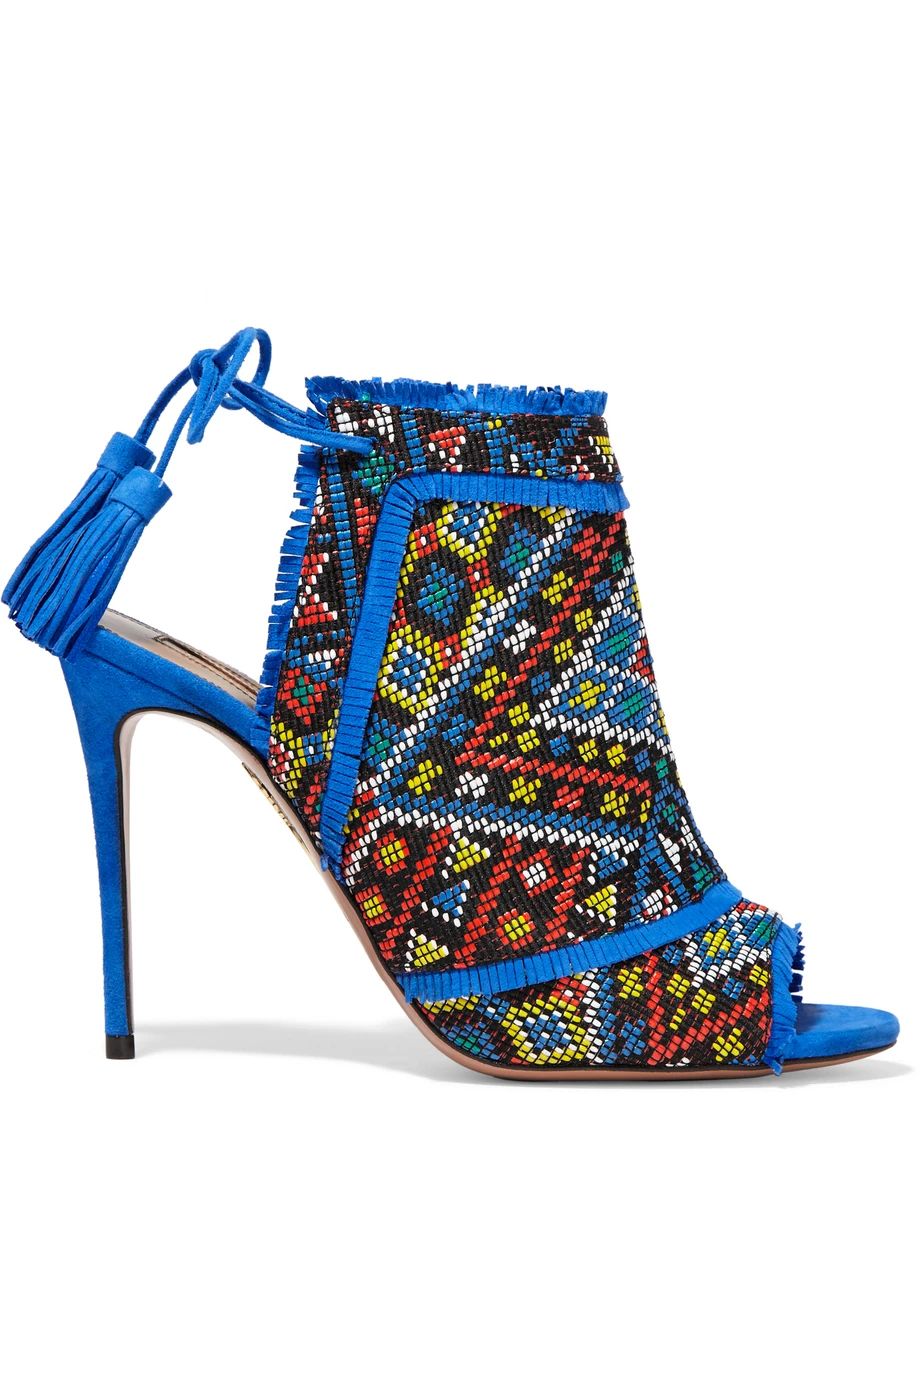 Aquazzura Colorado Embroidered Suede Sandals, Cobalt Blue, Women's US Size: 7, Size: 37.5 | NET-A-PORTER (US)